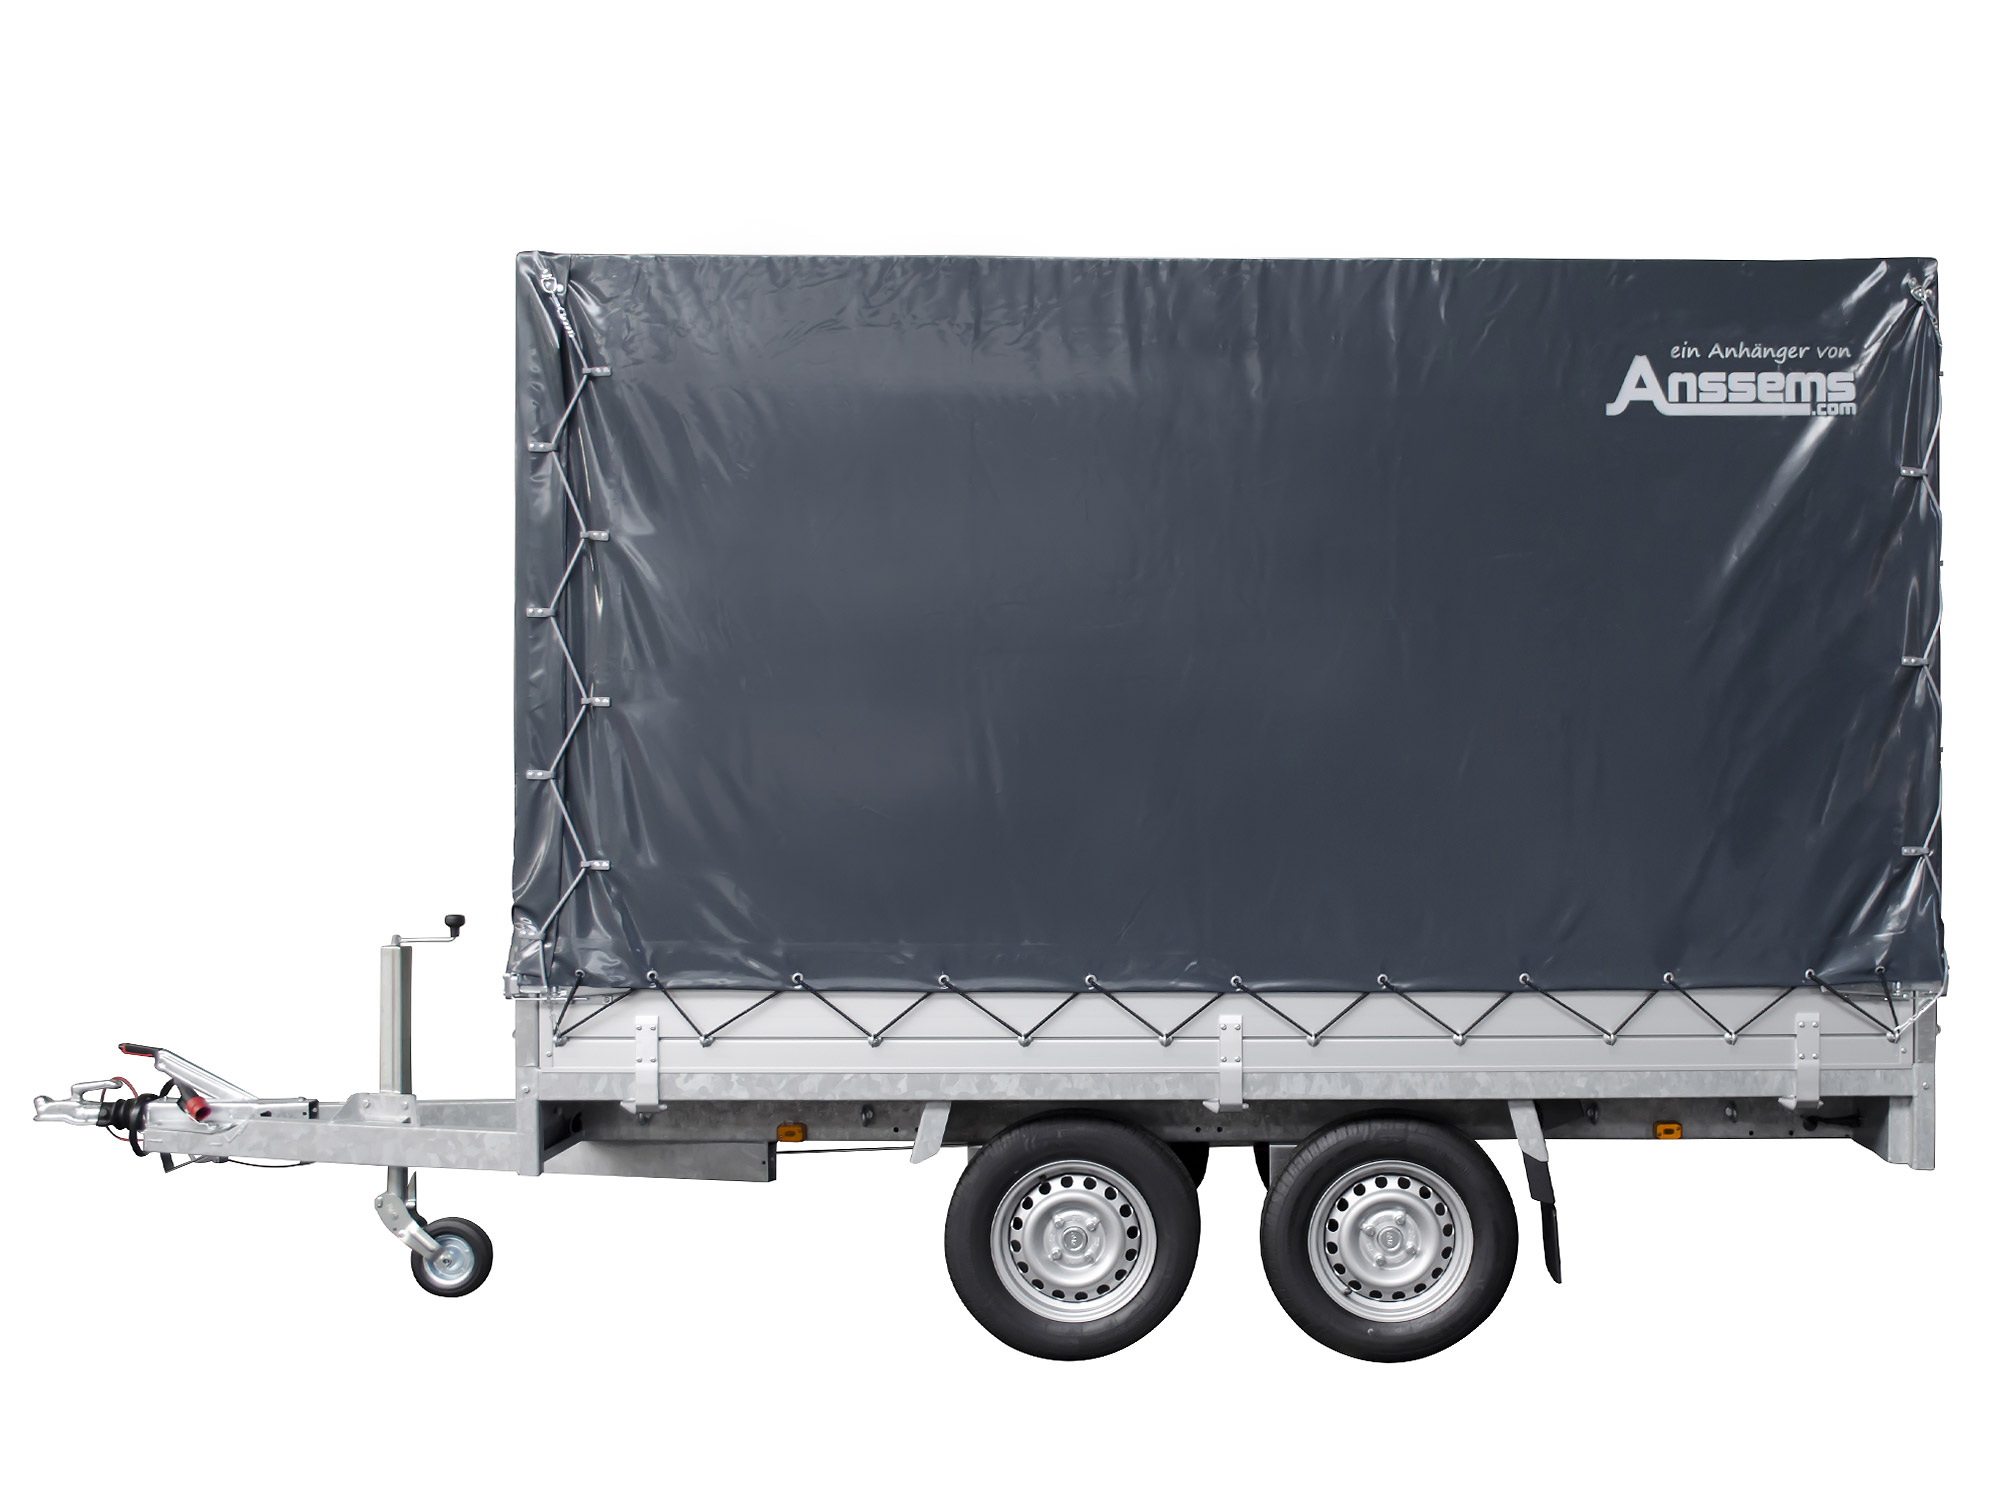 Anssems PKW Anhänger Hochlader Alu 2500 kg, Ladefläche 3,25 x 1,78 m mit Aktionsplane 1,80m